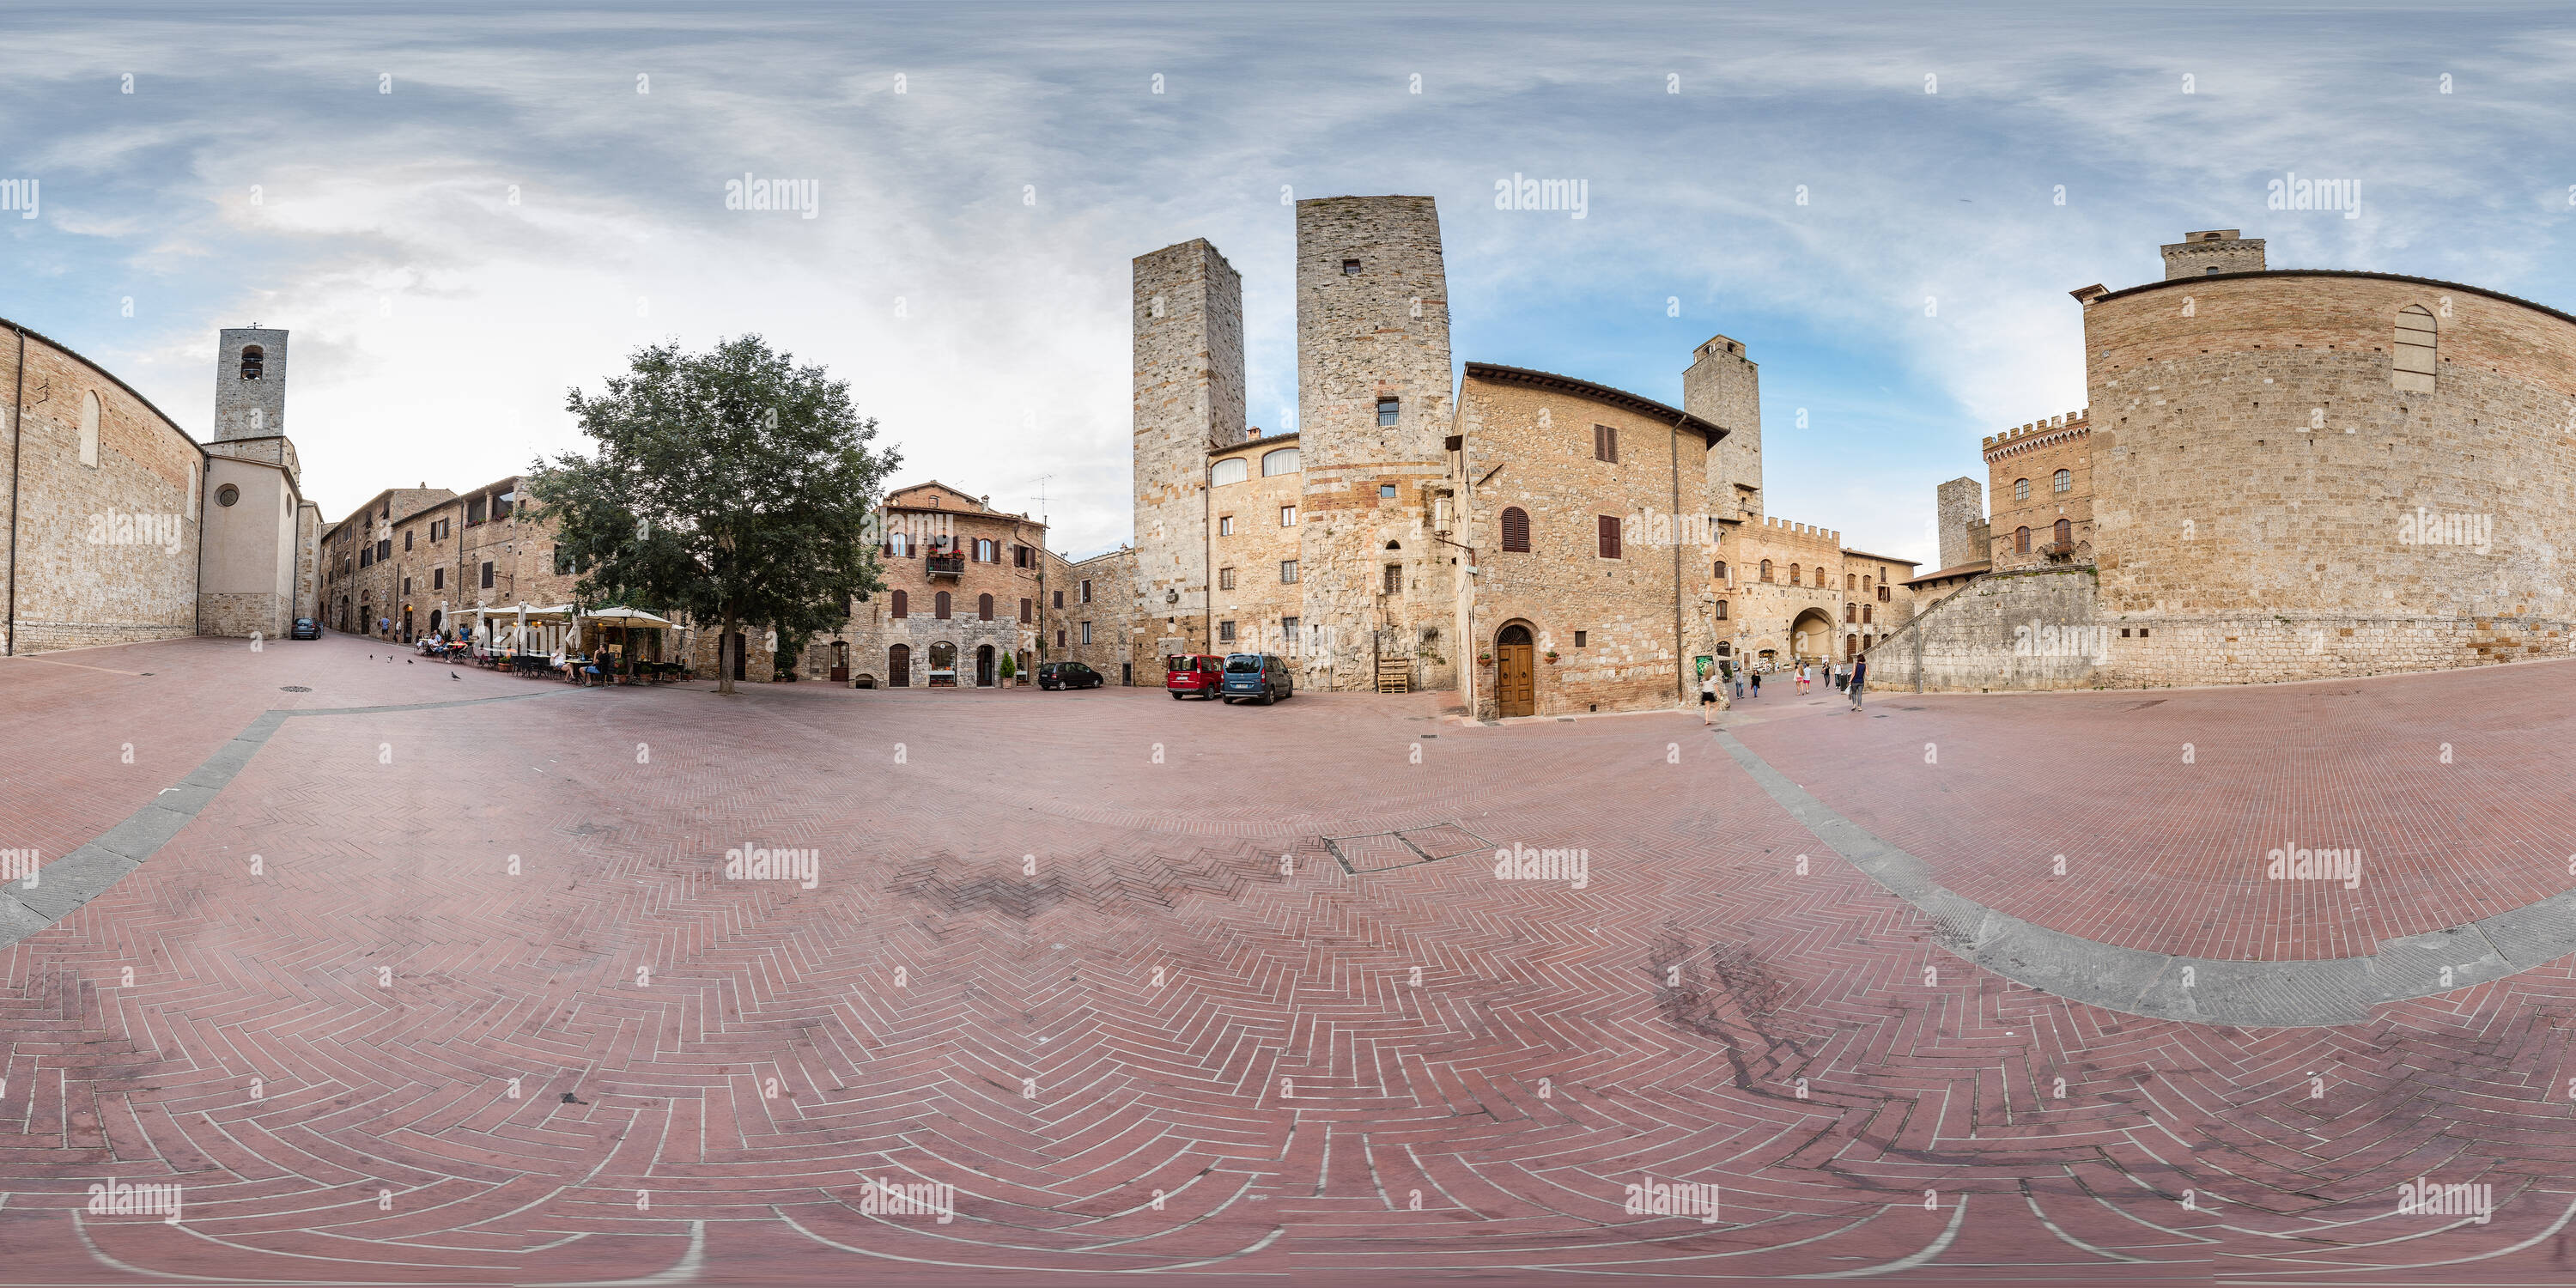 Vue panoramique à 360° de Piazza delle Erbe. L'Italie.